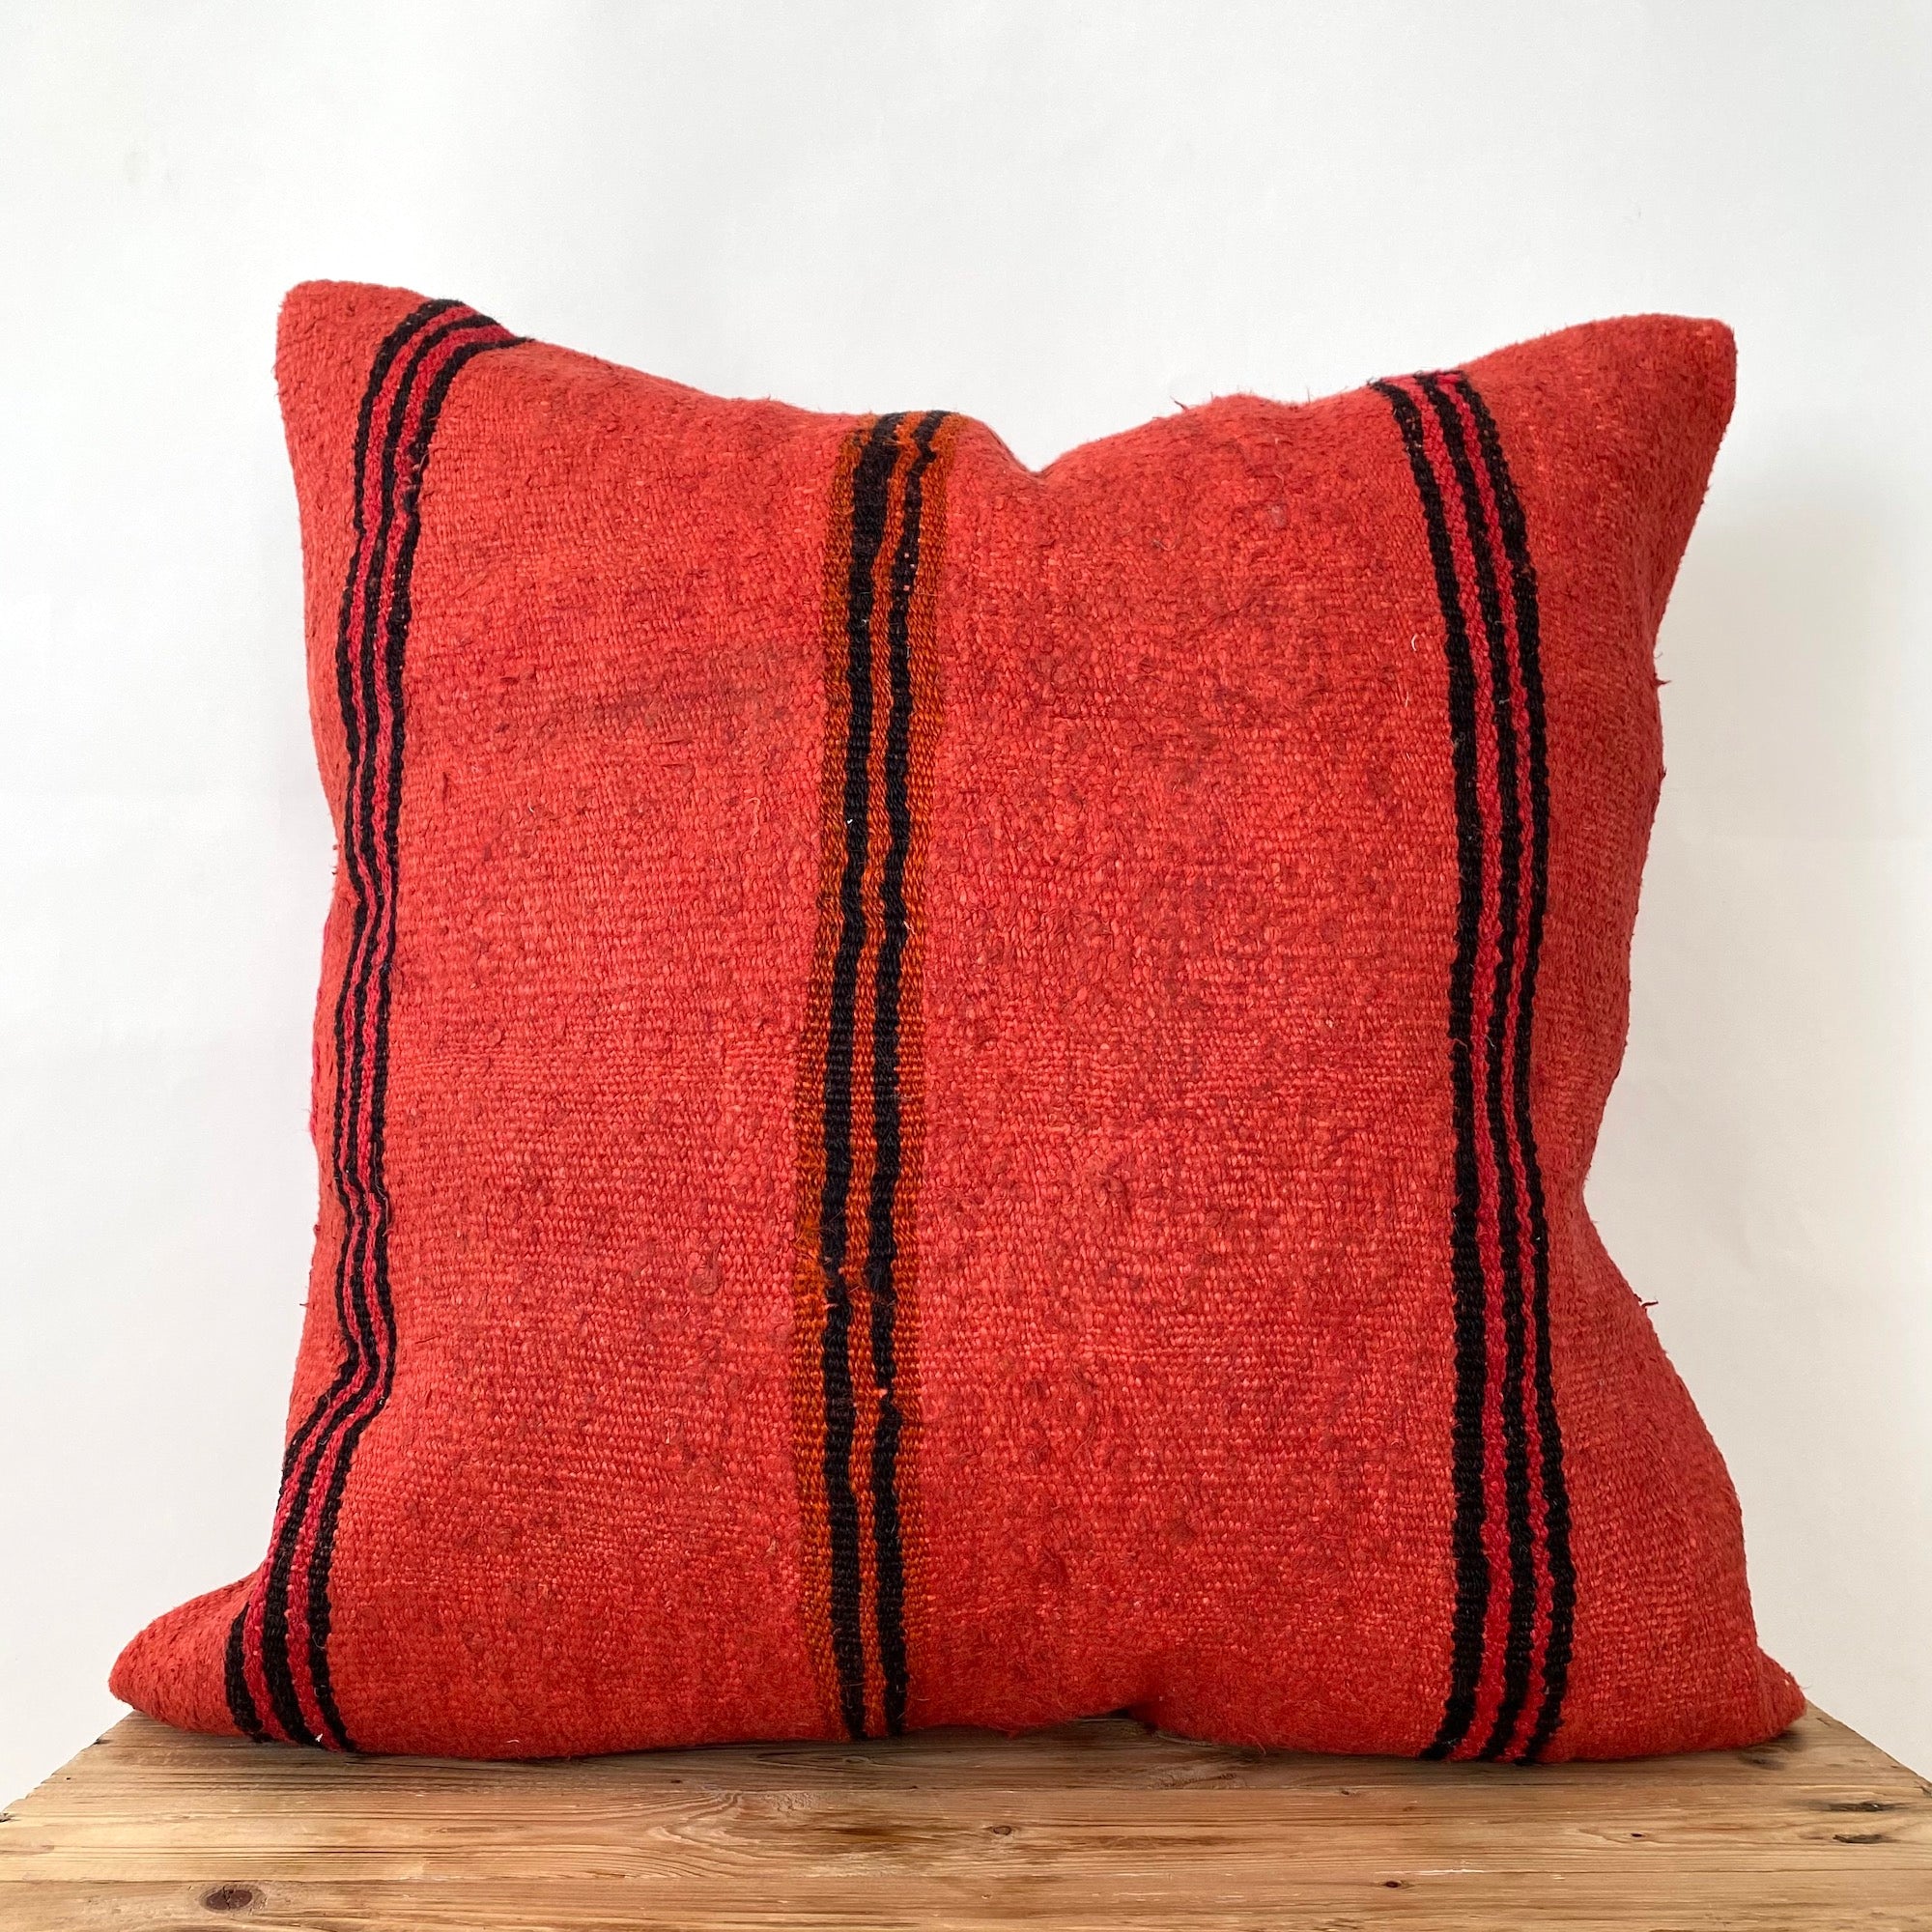 Courtenay - Red Hemp Pillow Cover - kudenrugs